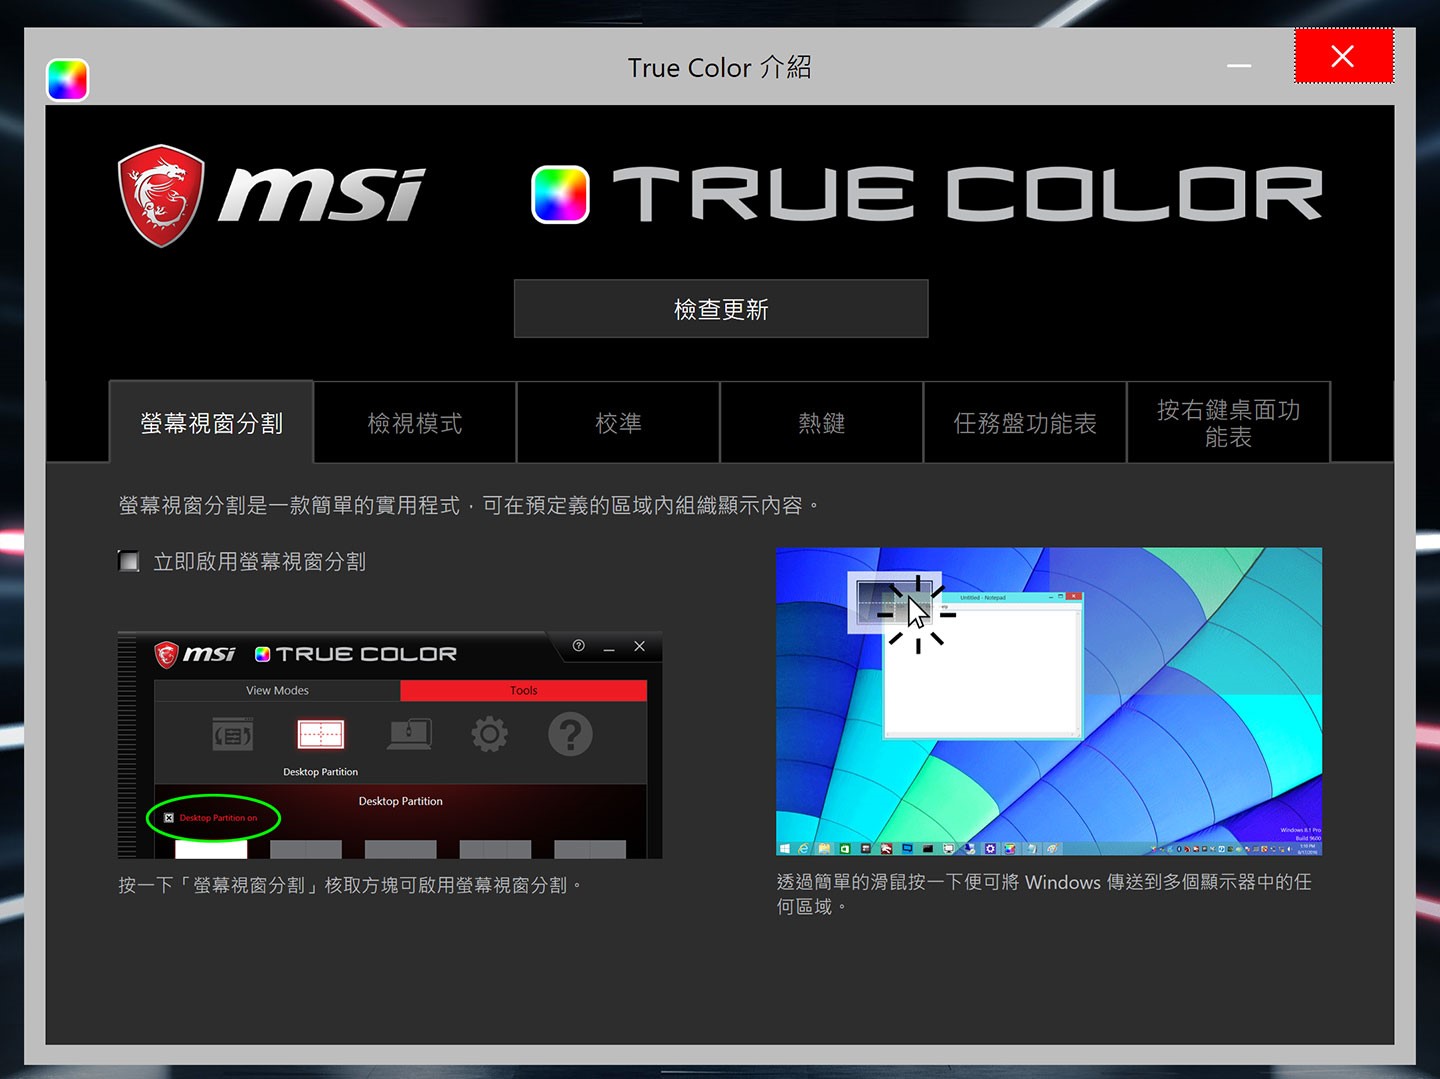 MSI True Color 工具也提供像是螢幕視窗分割、檢視模式、校準、熱鍵…相當實用的輔助工具。